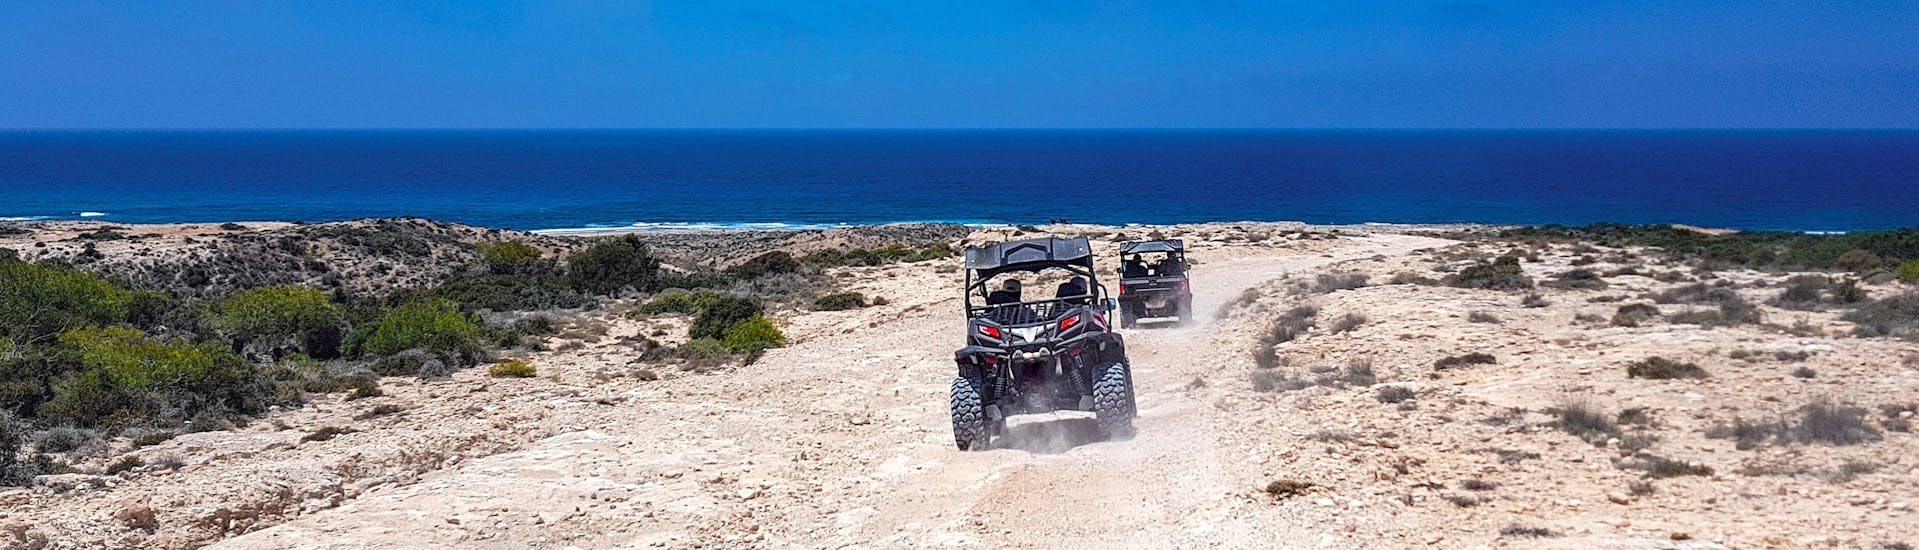 Dos buggies se dirigen a la costa durante una actividad para quad, ATV y buggy.